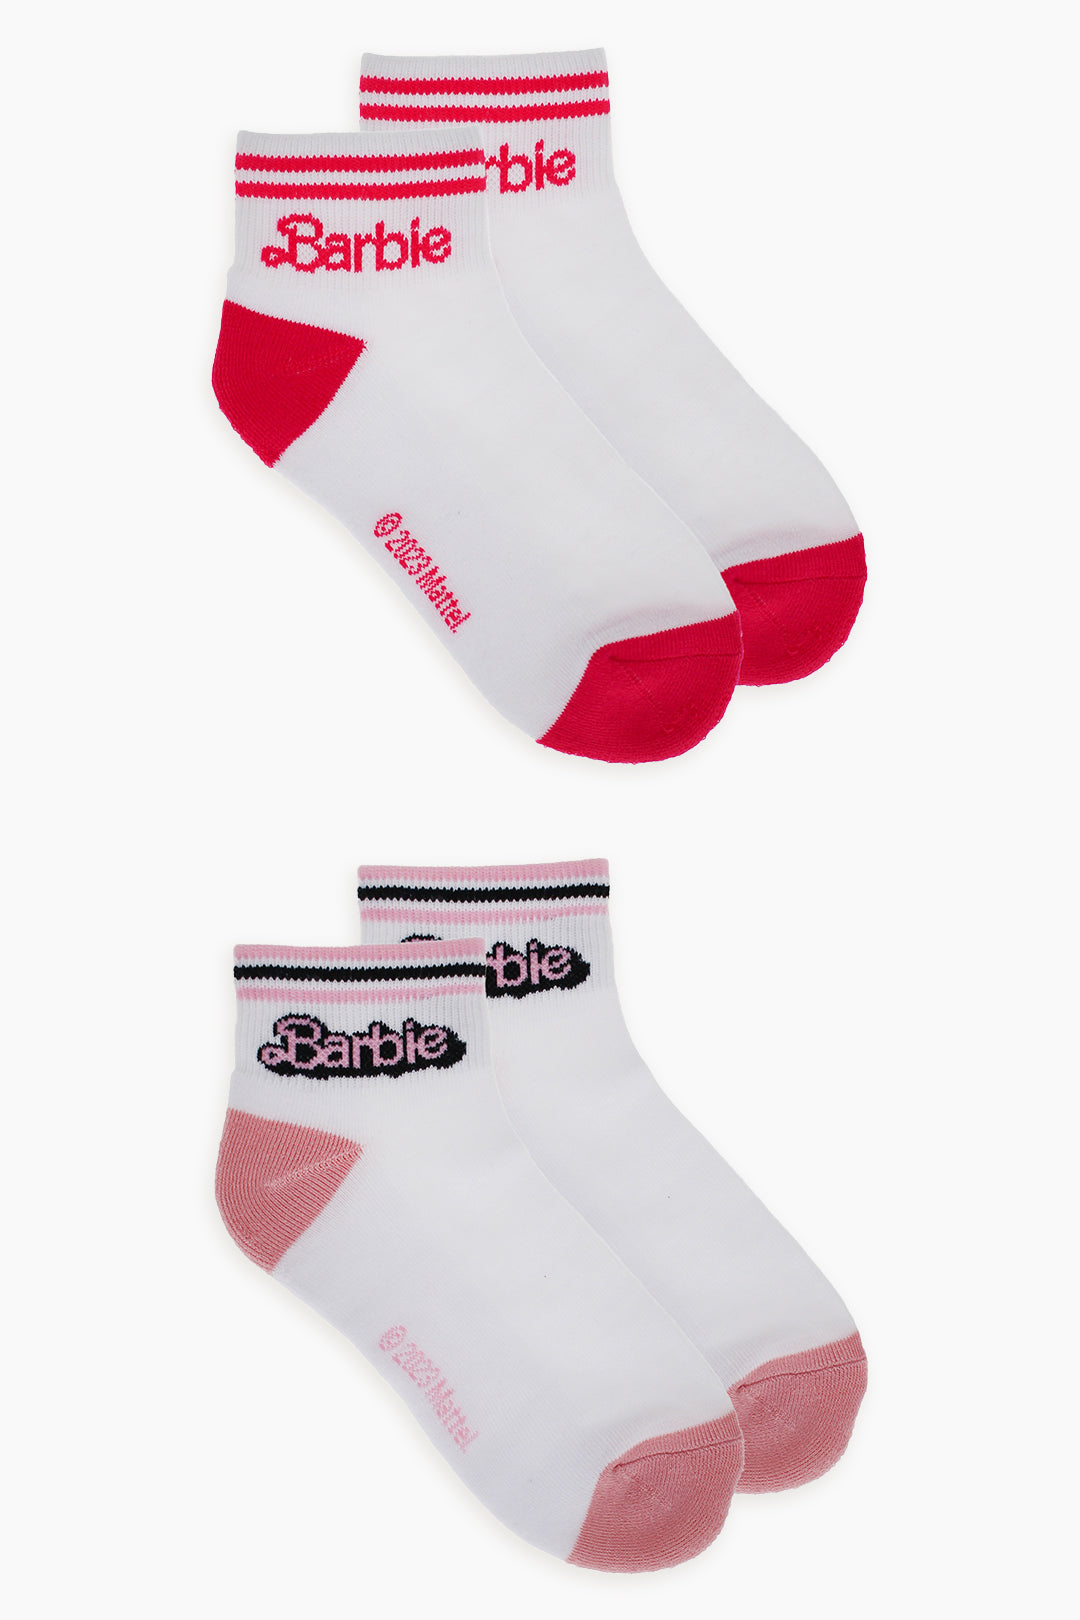 Gertex Barbie Ladies 2-Pack Half Terry Ankle Socks in White